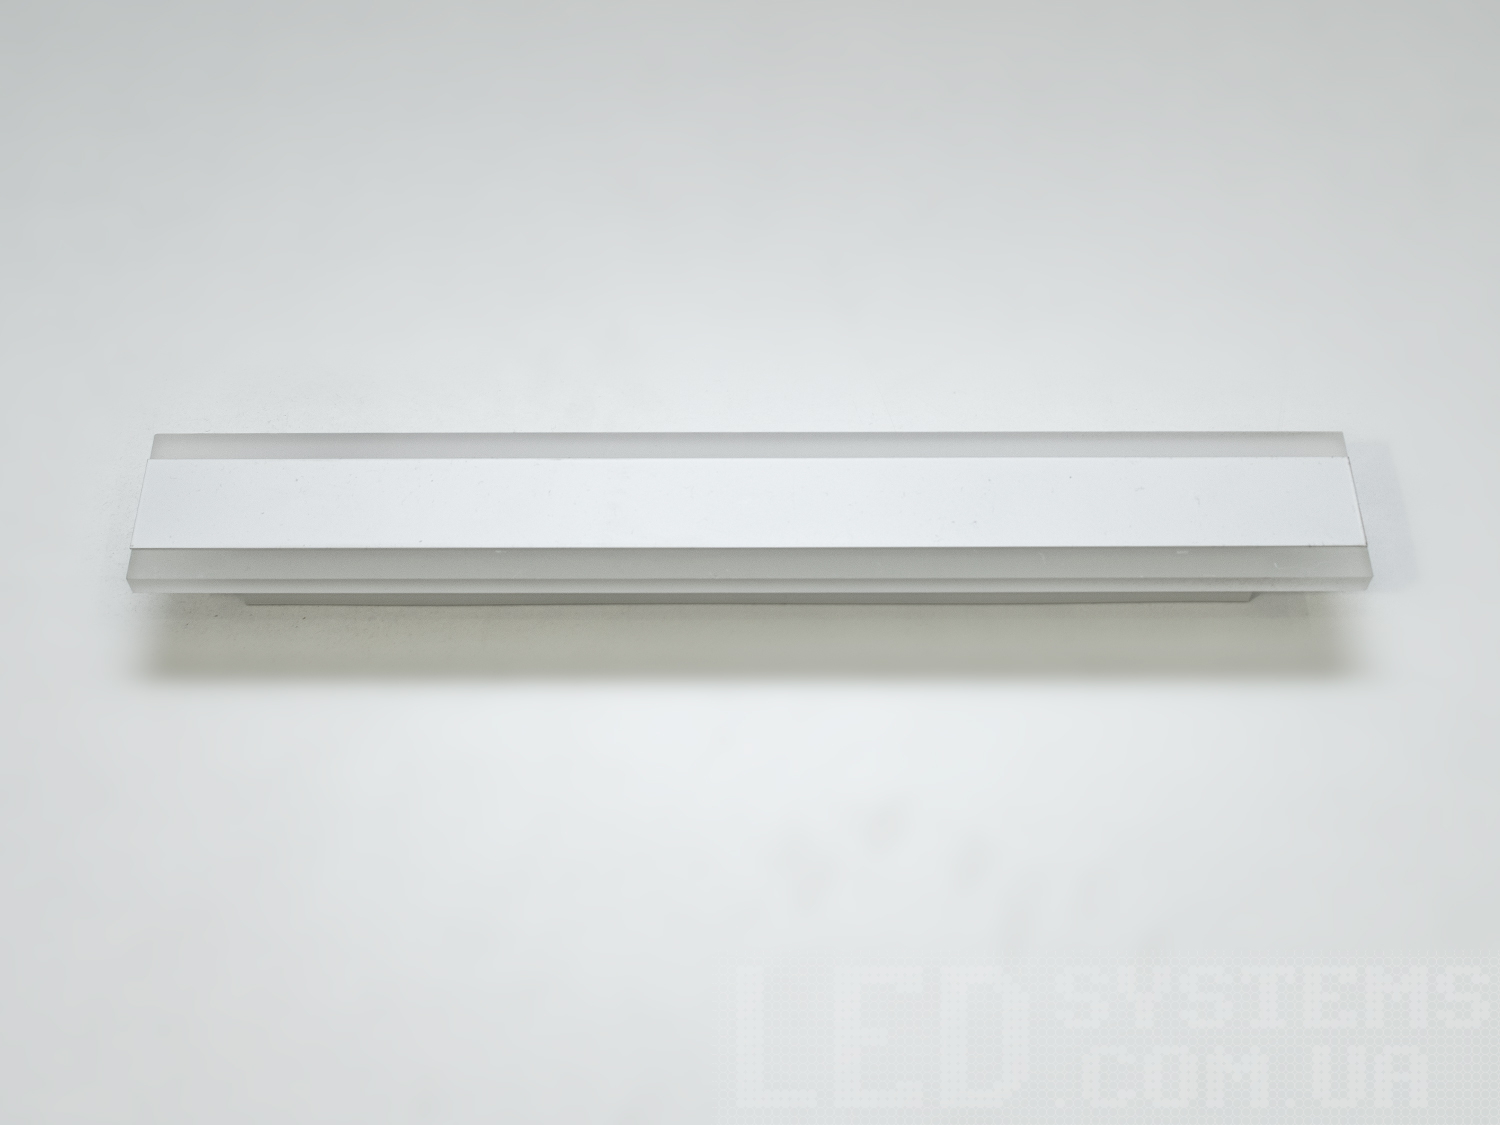 Витончений накладний LED світильник білого кольору з незвичайним виконанням плафонів, що обрамляють LED лампи. LED світильник є ідеальним рішенням для акцентного (елементного) підсвічування в інтер'єрі - підсвічування дзеркал, картин, стінних ніш, особливих деталей інтер'єру і є не просто утилітарним світильником як звичайне лінійне підсвічування. Світильник має унікальні світлодіодні енергозберігаючі лампи. Які за дуже низької споживаної потужності створюють потужний світловий потік. Витончені накладні світлодіодні світильники призначені для створення яскравого світлодіодного освітлення з регульованою температурою кольору від теплого білого до холодного білого. Перемикання спектрів світіння світлодіодного світильника здійснюється простим вимкненням-вмиканням. Кріпиться до будь-яких видів поверхонь універсальним кріпленням-на планку.